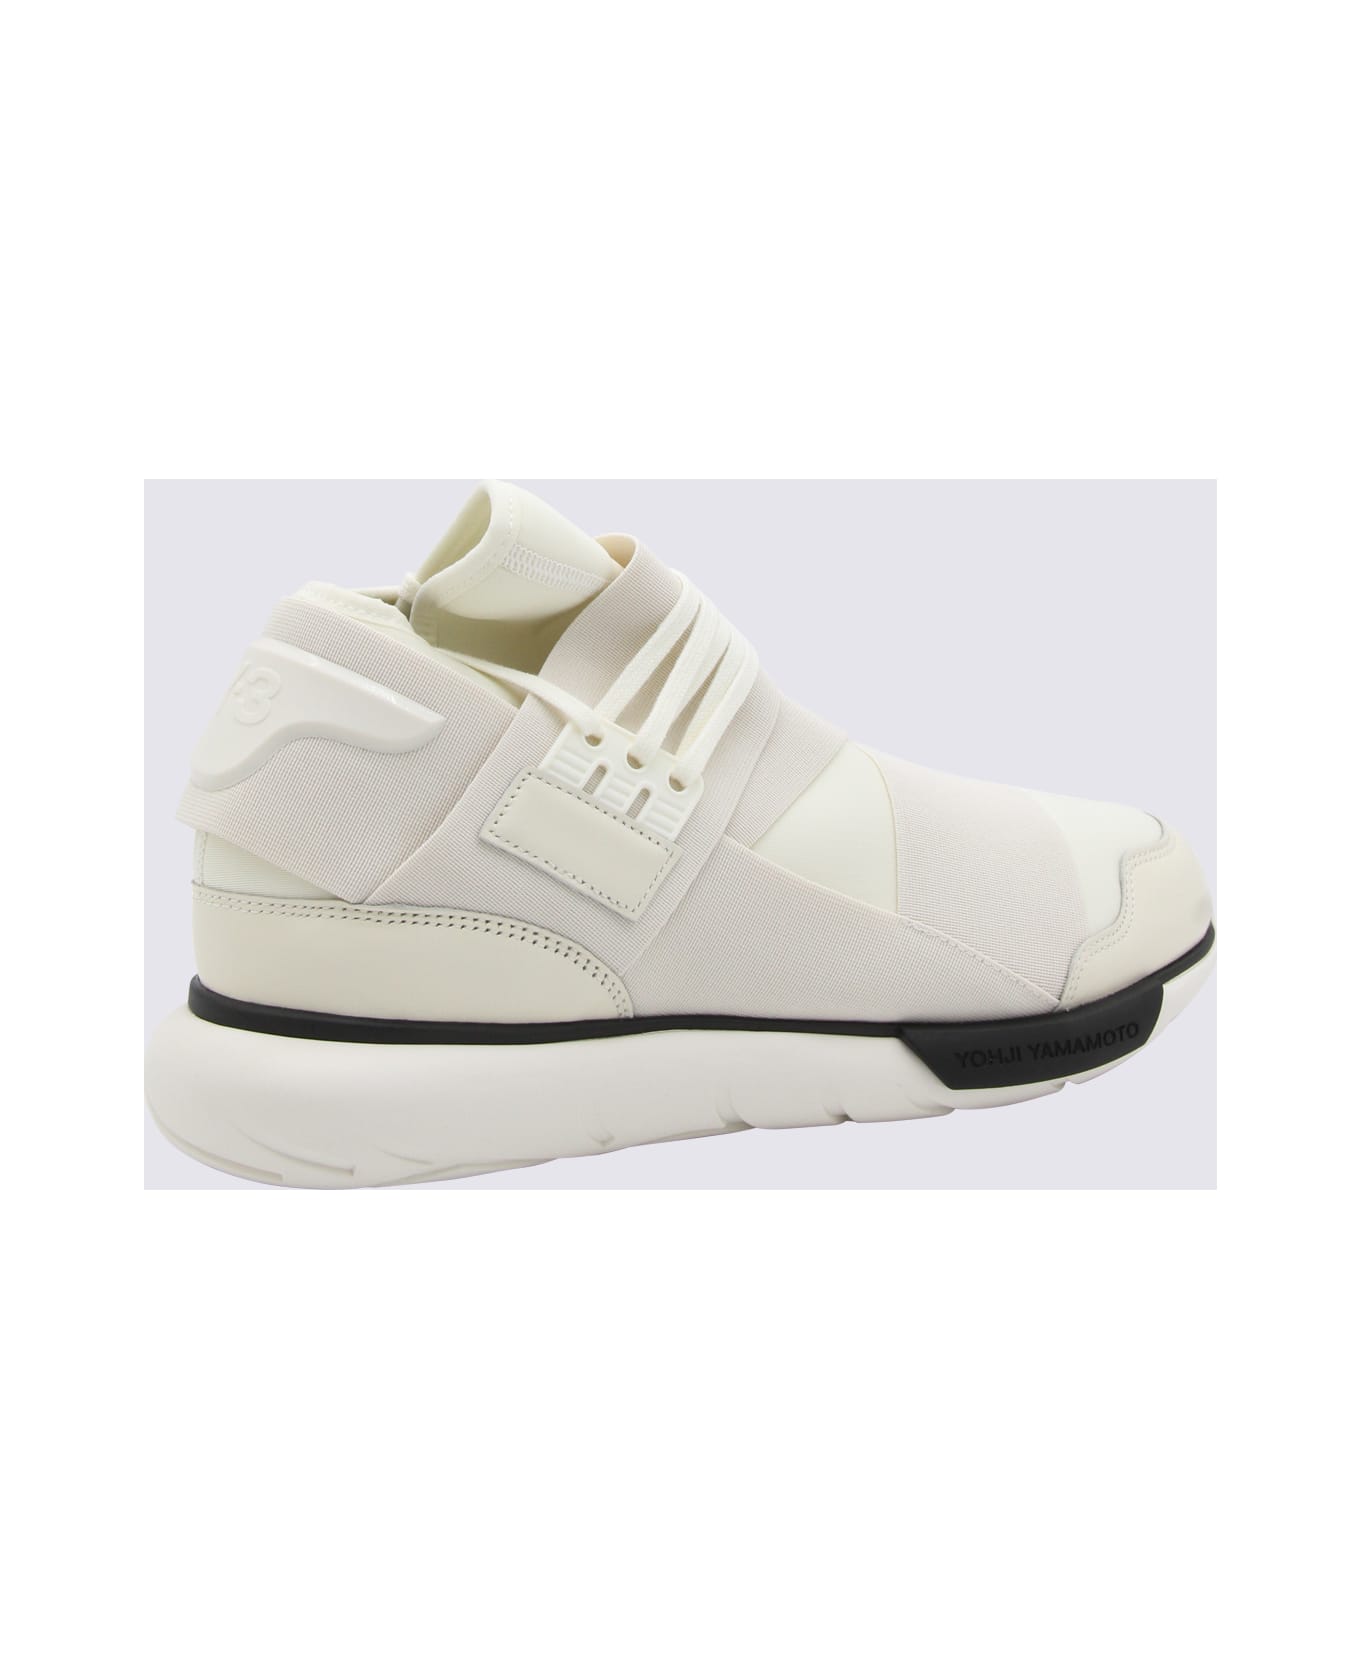 Y-3 White Canvas Sneakers - OFFWHITECREAMWHITEBLACK